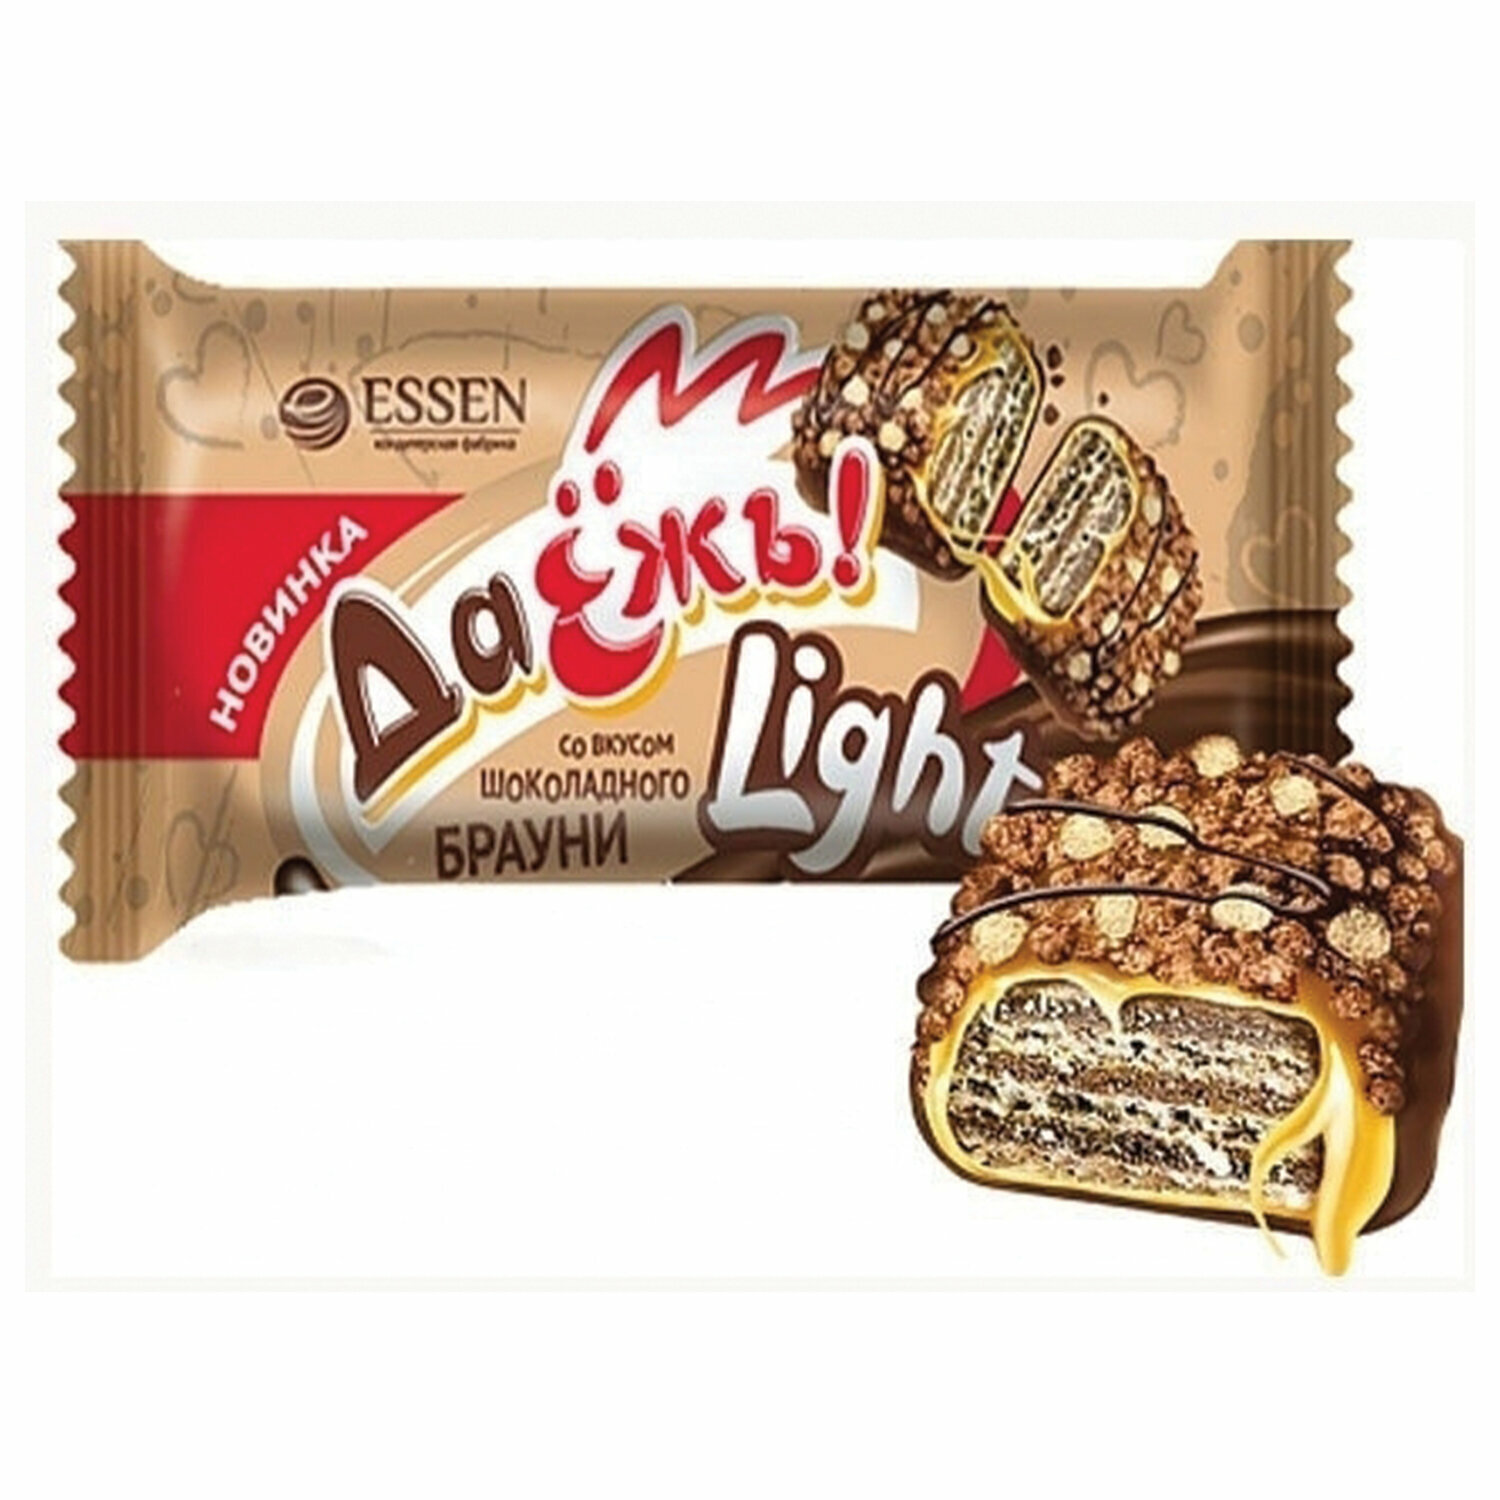 Конфеты шоколадные ESSEN "ДаЁжъ!" Light со вкусом шоколадного брауни, 500 г, пакет - фотография № 1